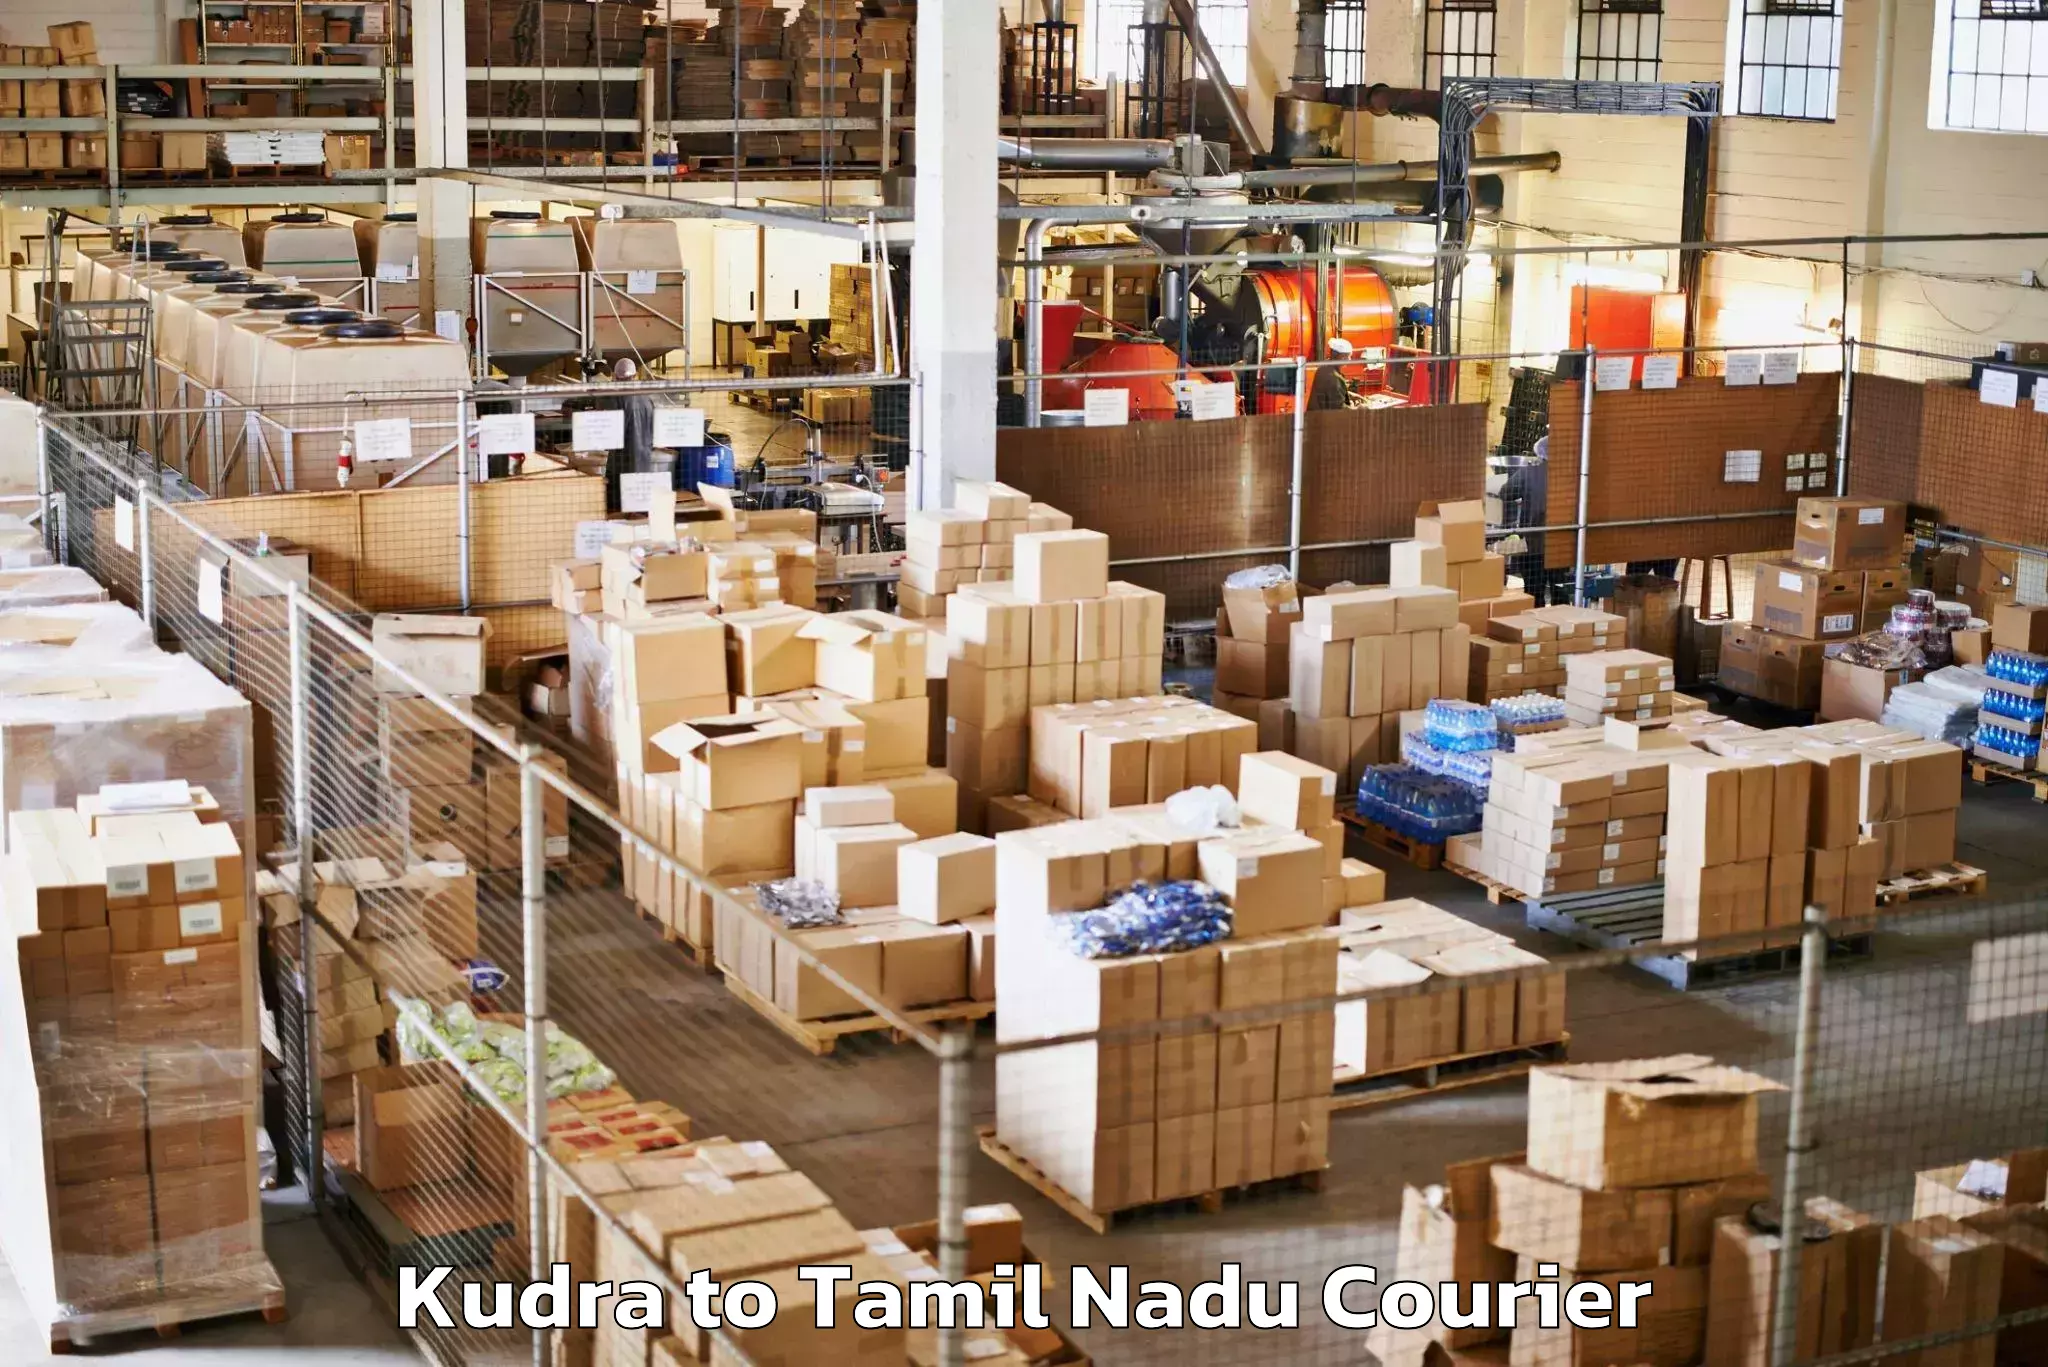 Baggage transport scheduler Kudra to Tamil Nadu